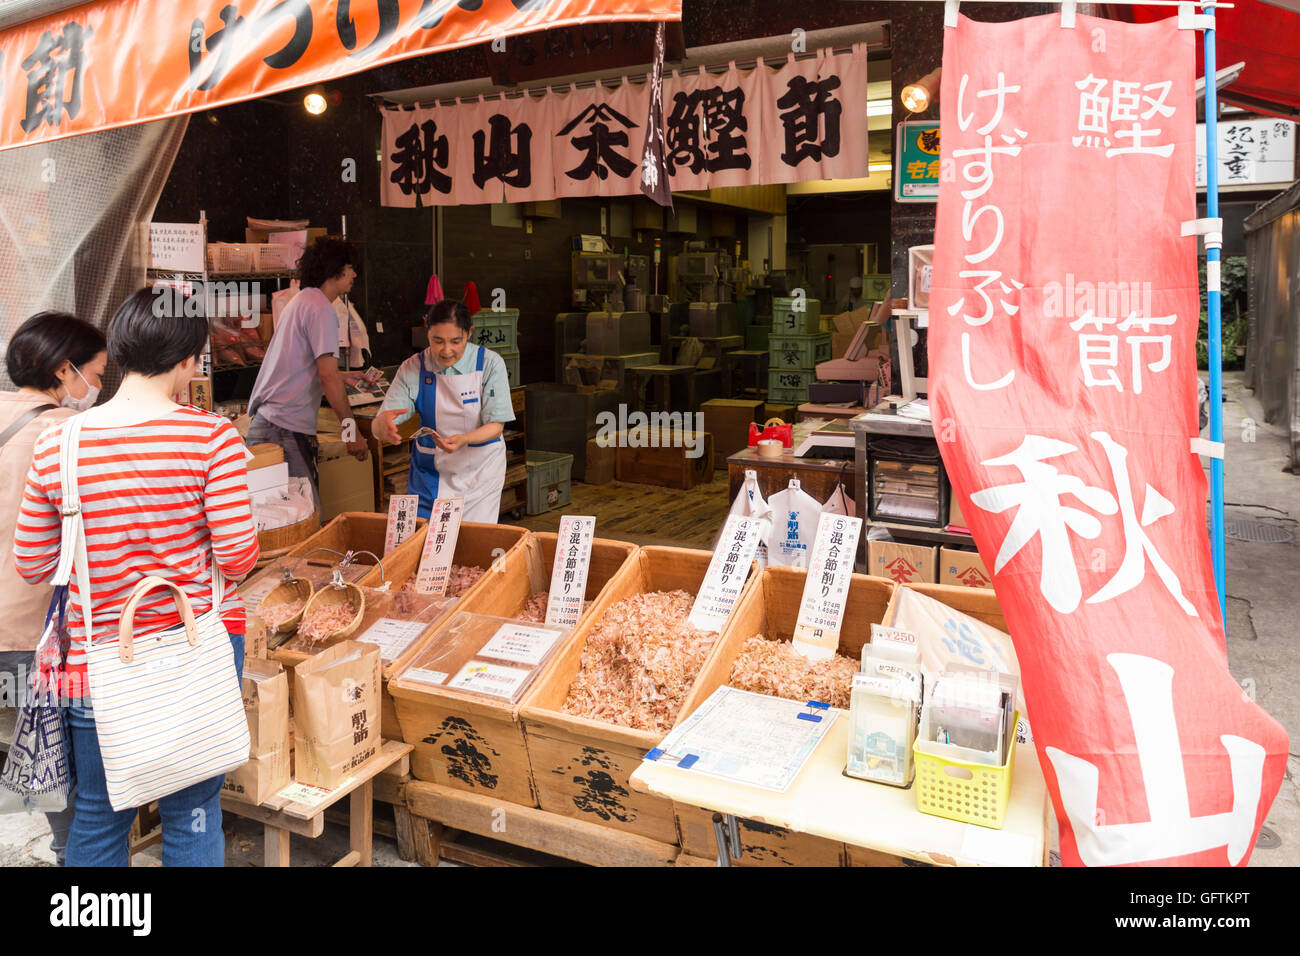 Die äußeren Markt Tsukiji-Fischmarkt in Tokio, Japan. Anzeige von frischen Fisch und Meeresfrüchte, Gewürze, Kochen Werkzeuge und Zutaten Stockfoto